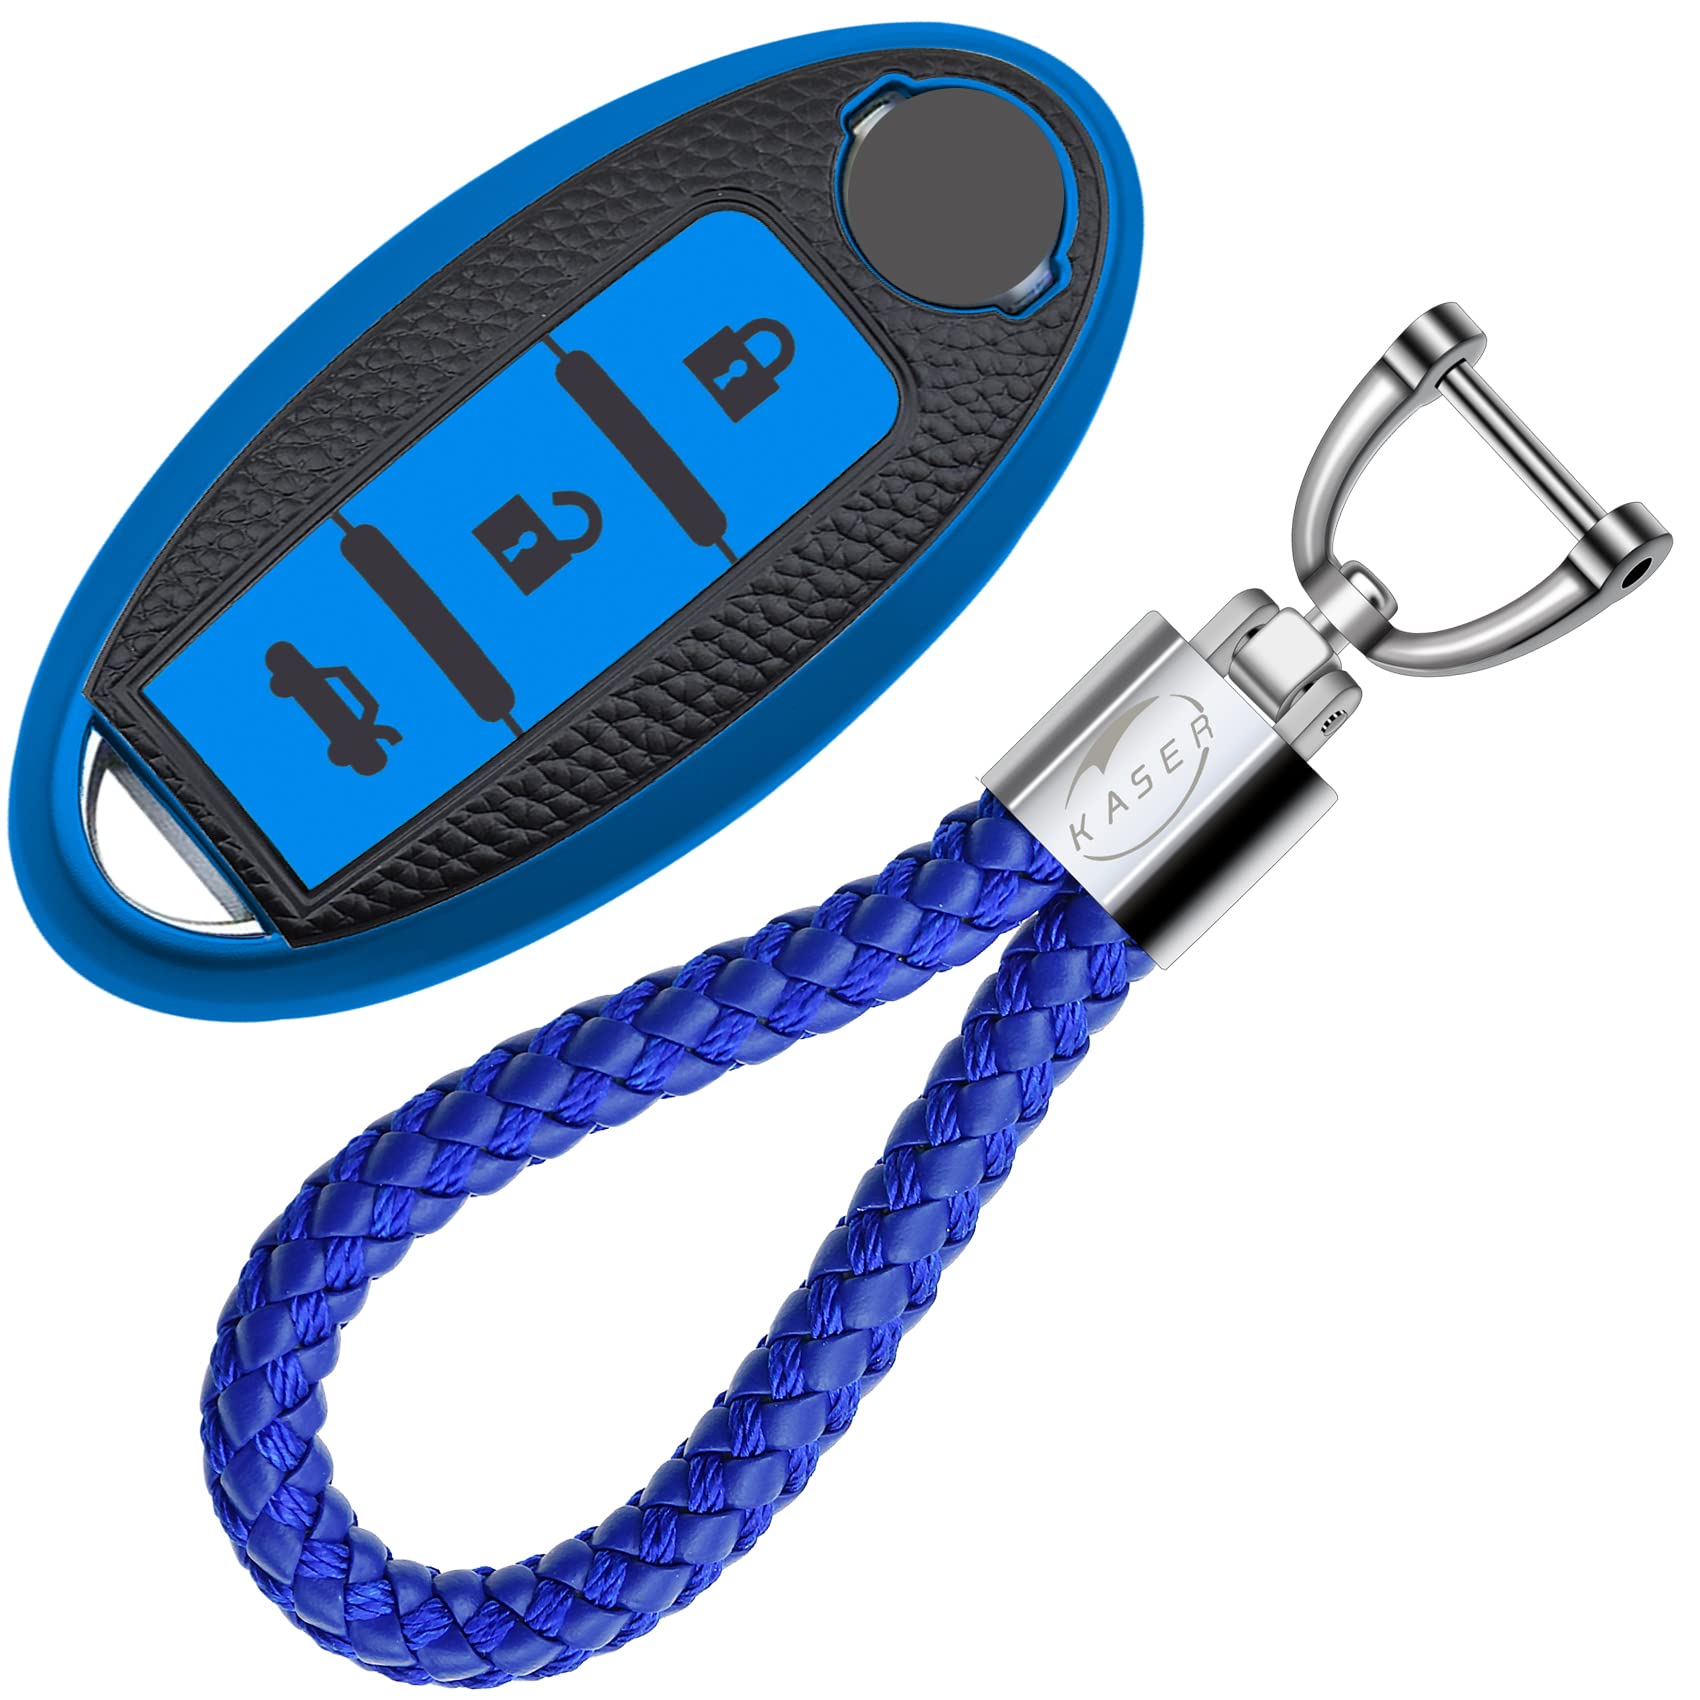 KASER Autoschlüssel Hülle kompatibel für Nissan Qashqai Juke X-Trail Micra Murano Leaf Schlüsselanhänger Abdeckung Silikon Schutzhülle Ledereffekt für Fernbedienung Keyless (Blau) von Kaser